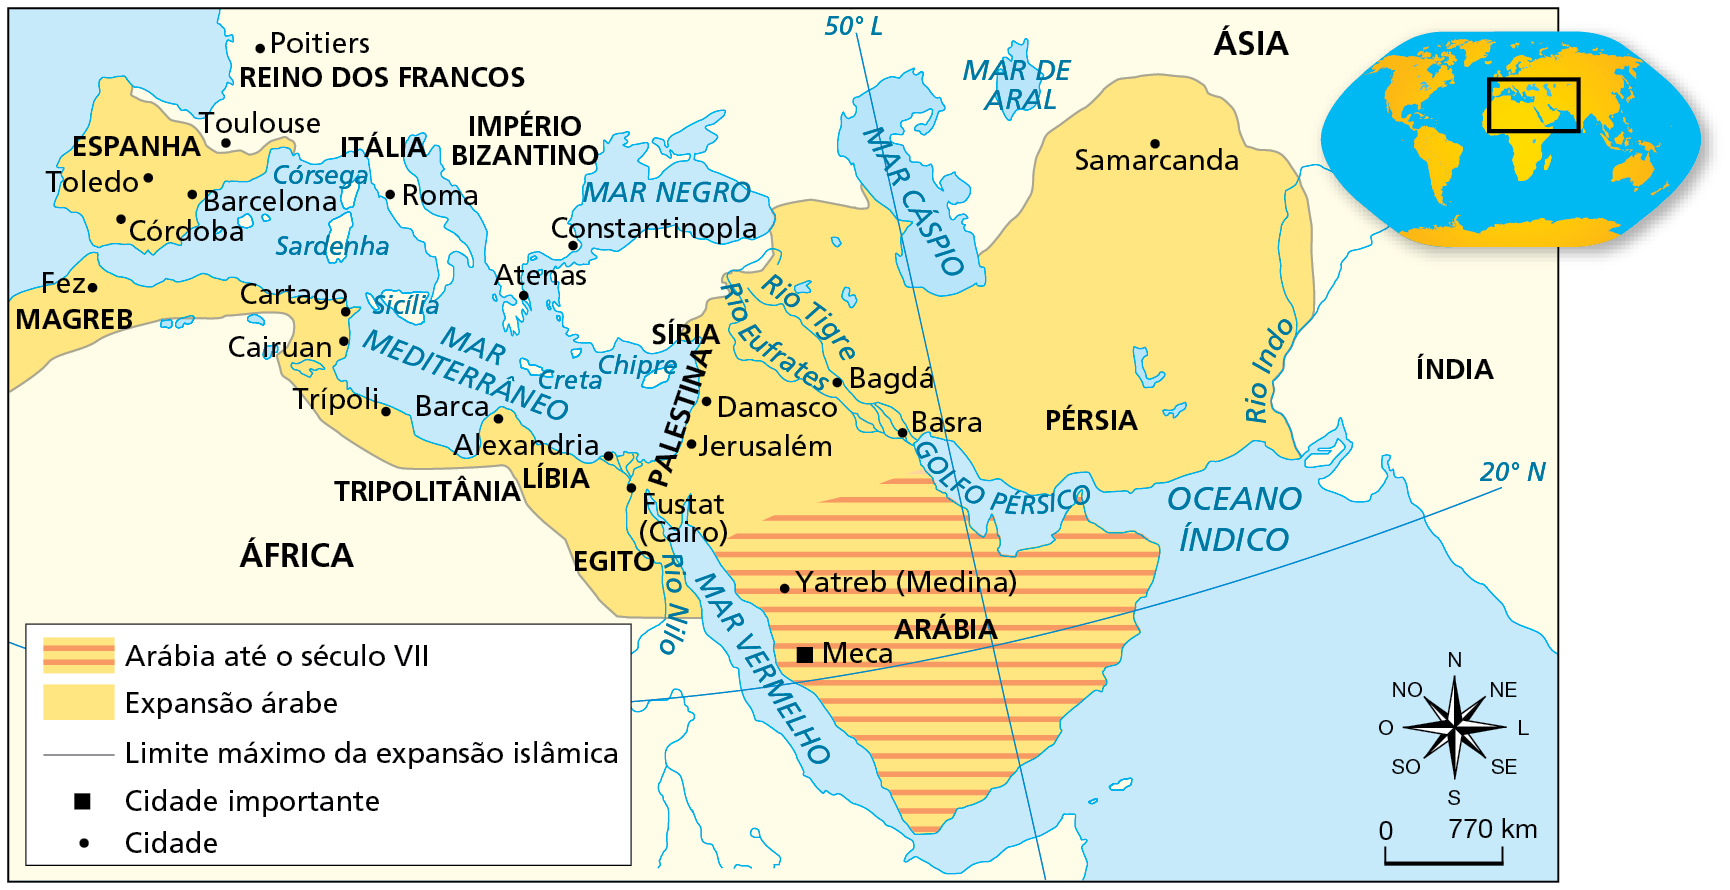 Mapa. Mundo: expansão islâmica (632-850). Destaque para parte do território asiático, europeu e africano. Em amarelo com listras laranjas, Arábia até o século sete, compreendendo a maior parte da Península Arábica, banhada pelo Mar Vermelho, Oceano Índico e Golfo Pérsico, abrangendo a cidade de Yatreb (Medina) e a cidade importante de Meca, destacada por um quadrado preto. Em amarelo, Expansão árabe, compreendendo o restante da Península Arábica e territórios na Pérsia, Síria e Palestina, na Ásia, incluindo as cidades de Samarcanda, Basra, Bagdá, Damasco e Jerusalém; territórios de Egito, Líbia e Magreb, na África, incluindo as cidades de Fustat (Cairo), Alexandria, Barca, Trípoli, Cairuan, Cartago e Fez; e a Península Ibérica, na Europa, incluindo as cidades de Toledo, Córdoba e Barcelona. No canto inferior direito, rosa dos ventos e escala de 0 a 770 quilômetros.